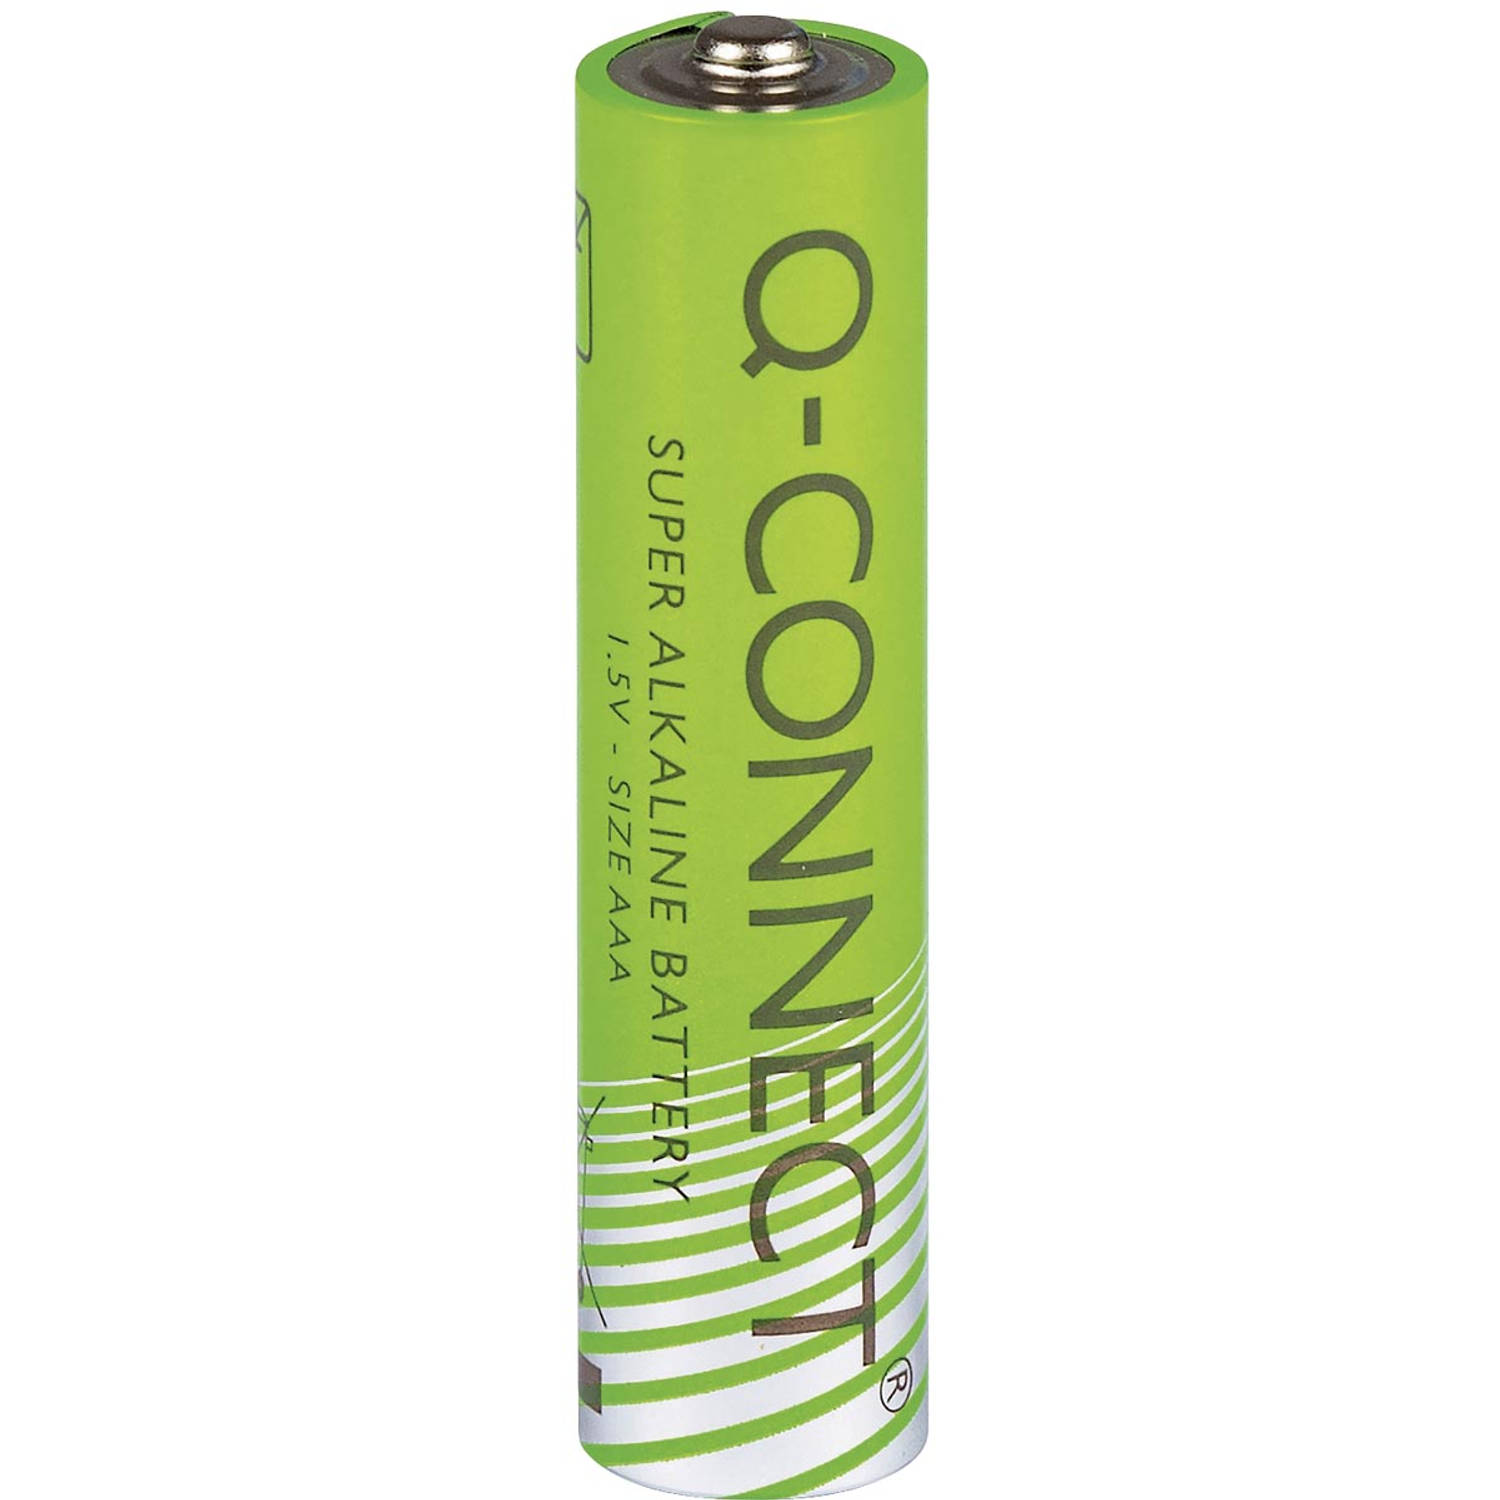 Q-CONNECT batterijen AAA, blister van 4 stuks 10 stuks